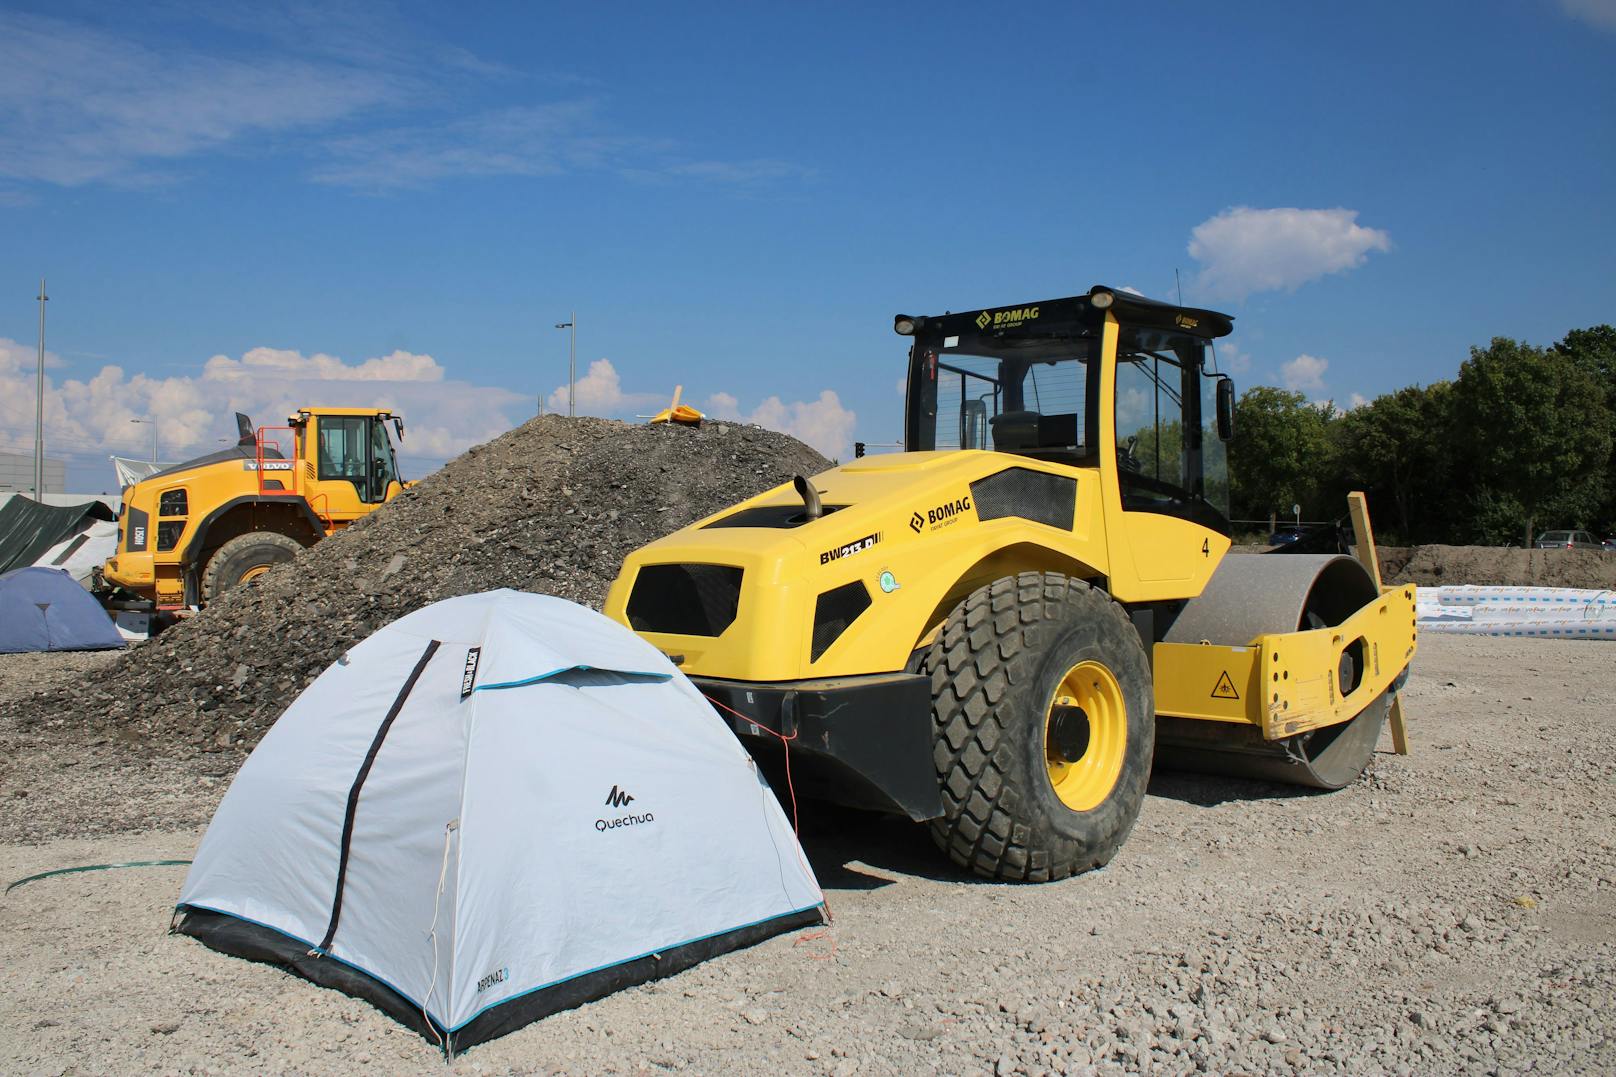 Die Zelte wurden vor Baggern und anderen Geräten platziert.